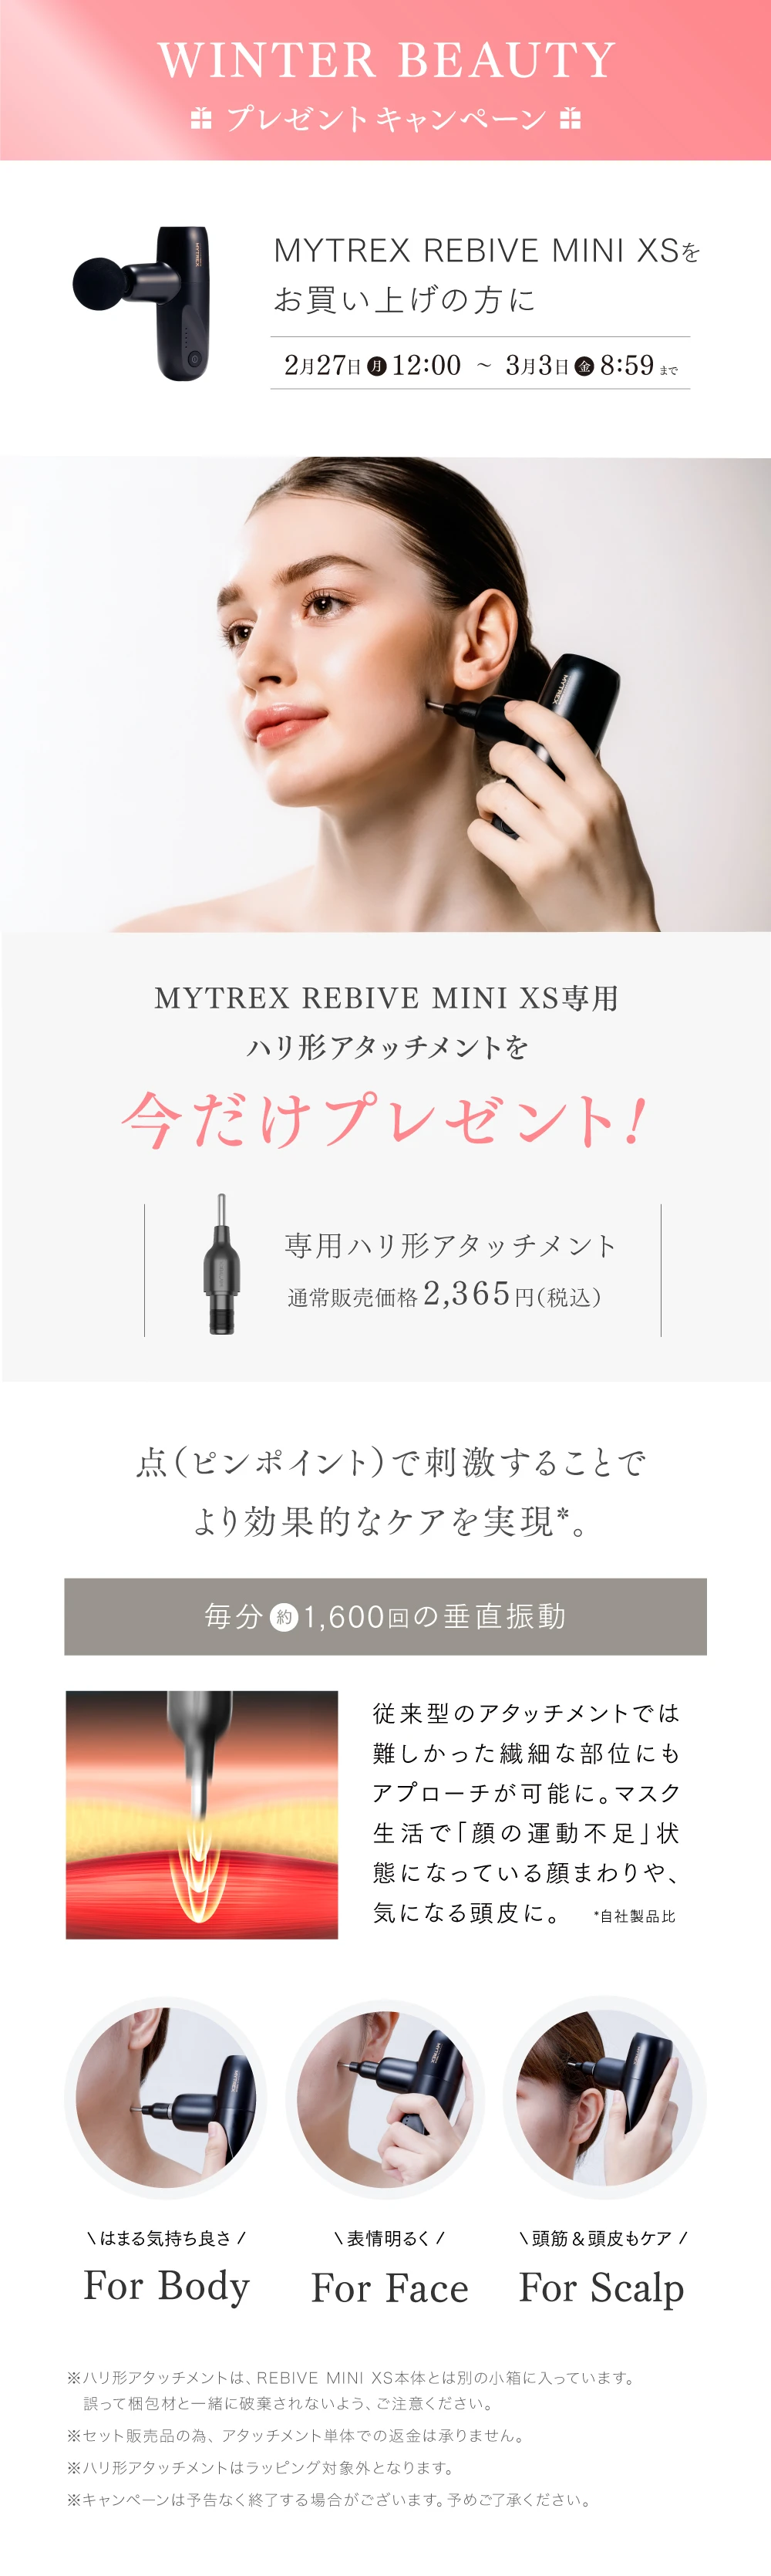 新発売 MYTREX REBIVE マイトレックス リバイブ MINI ad-naturam.fr